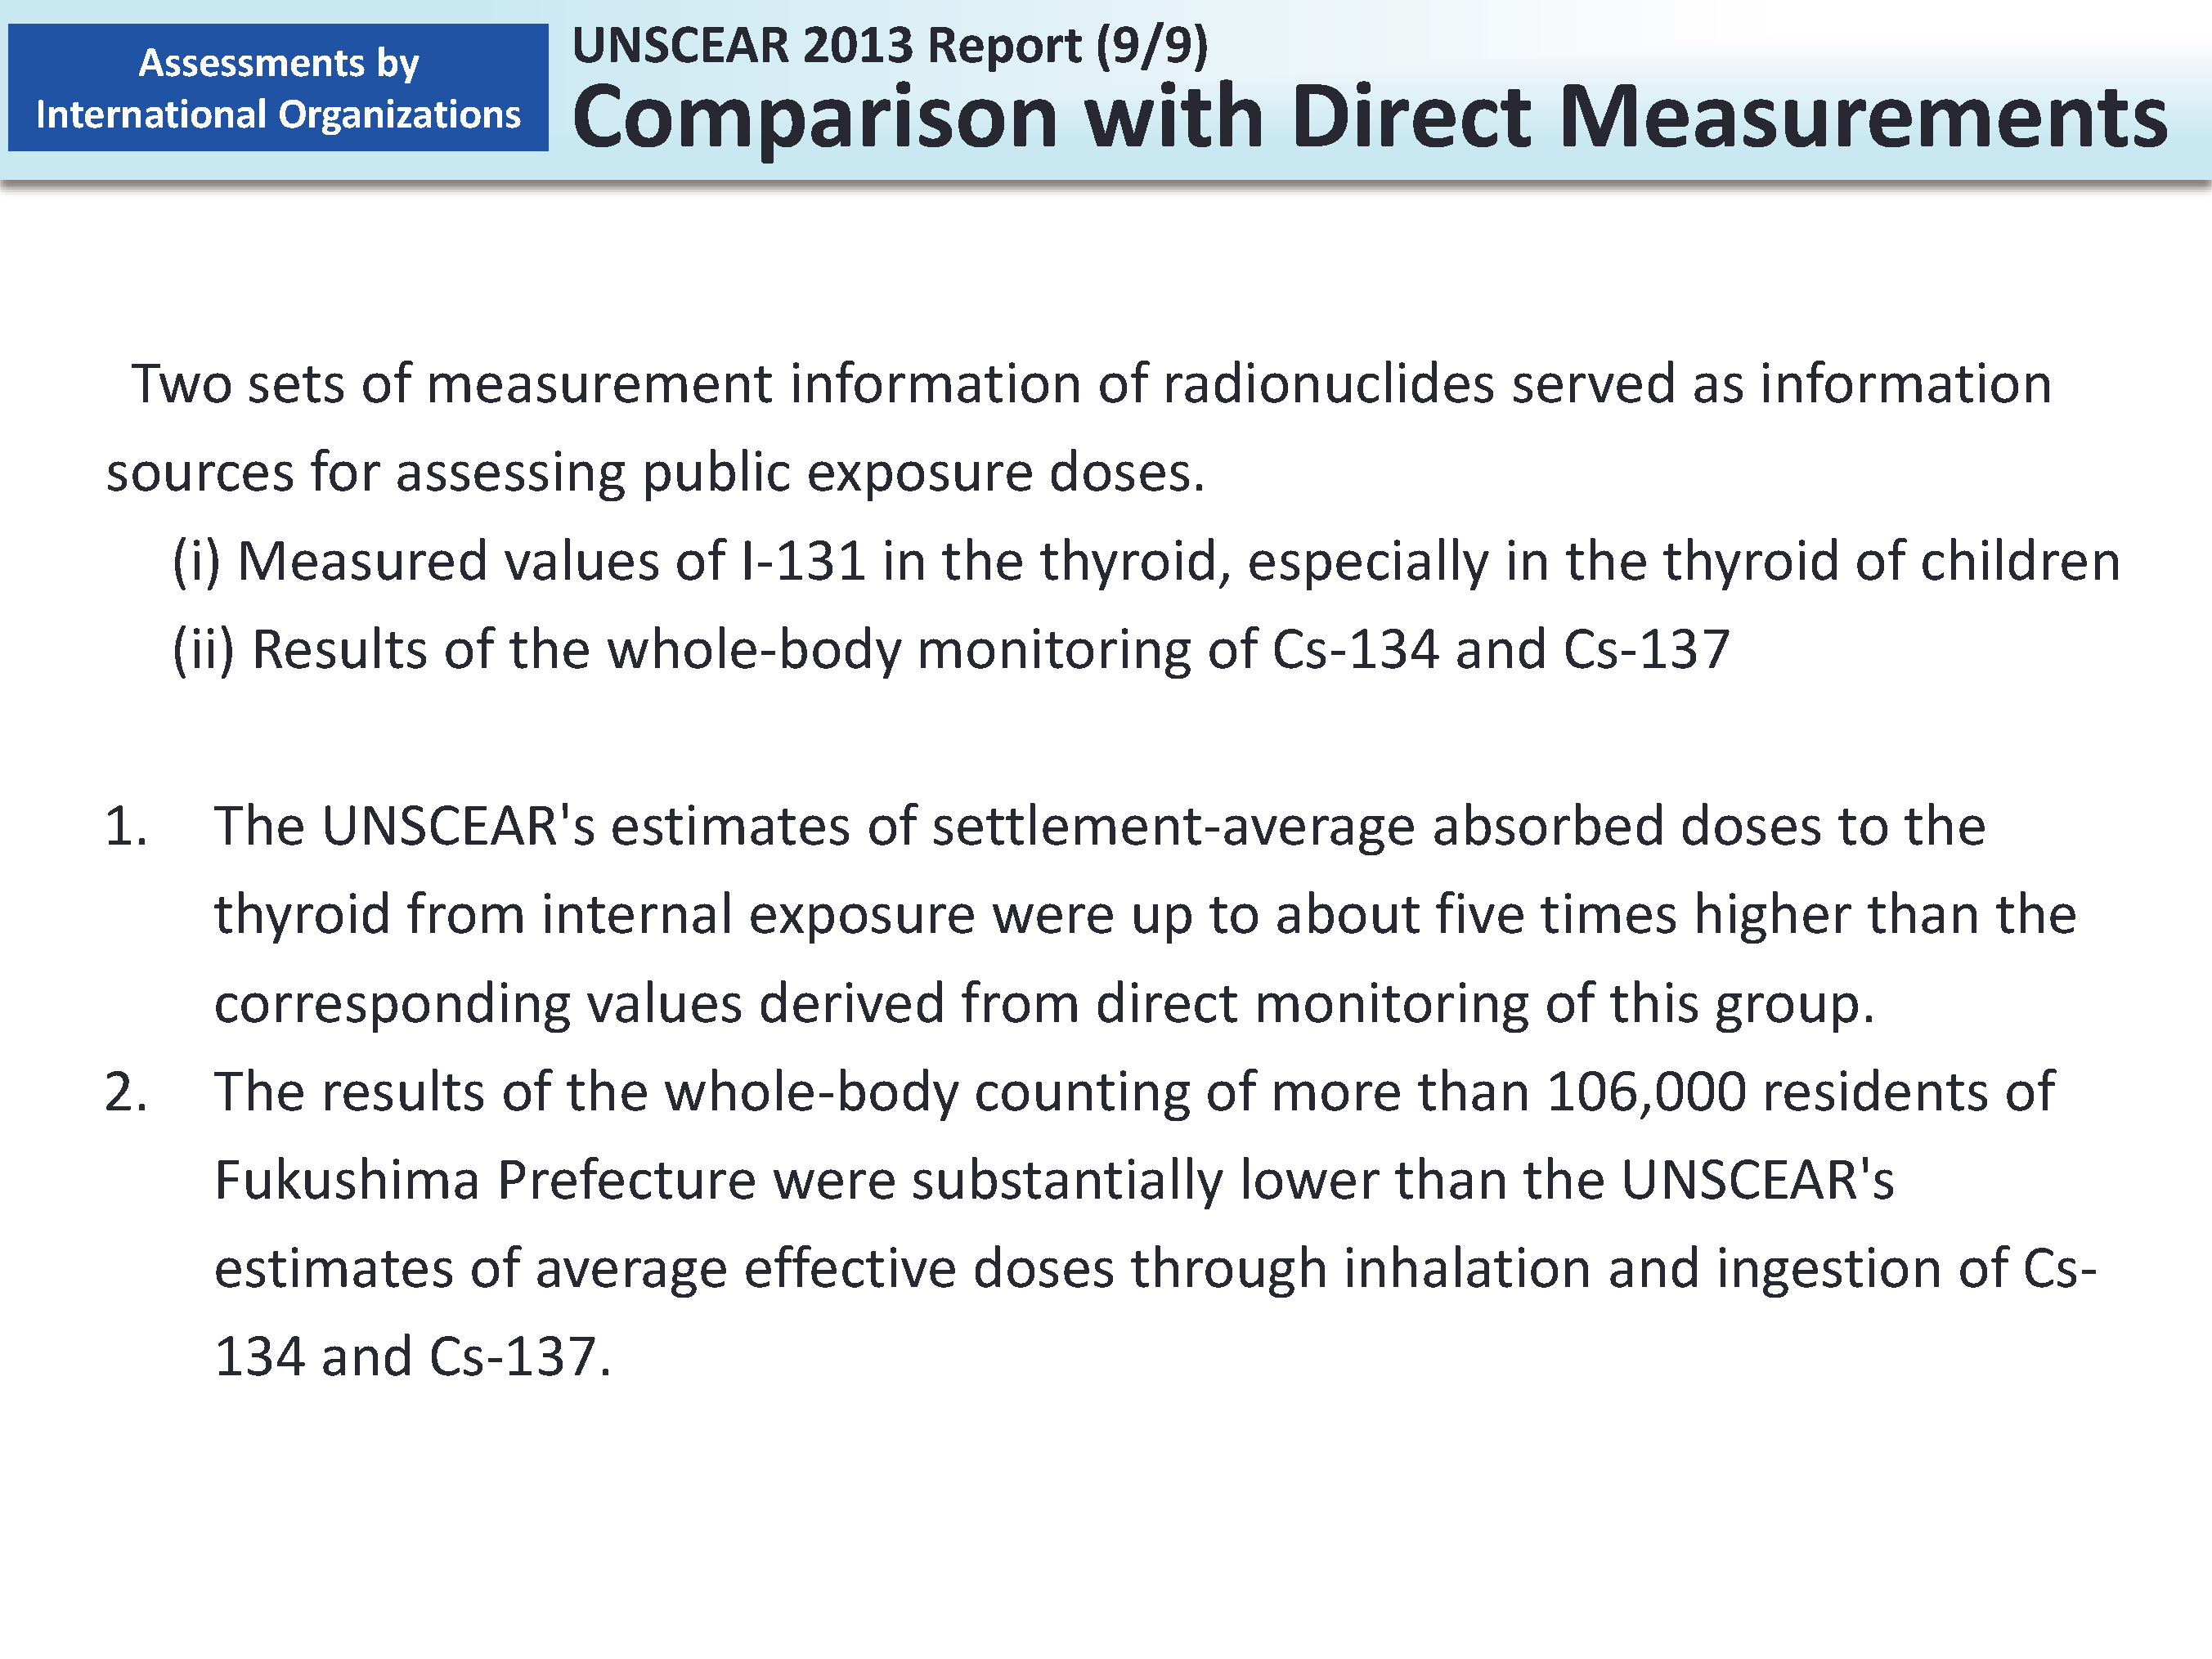 UNSCEAR 2013 Report (9/9) Comparison with Direct Measurements_Figure